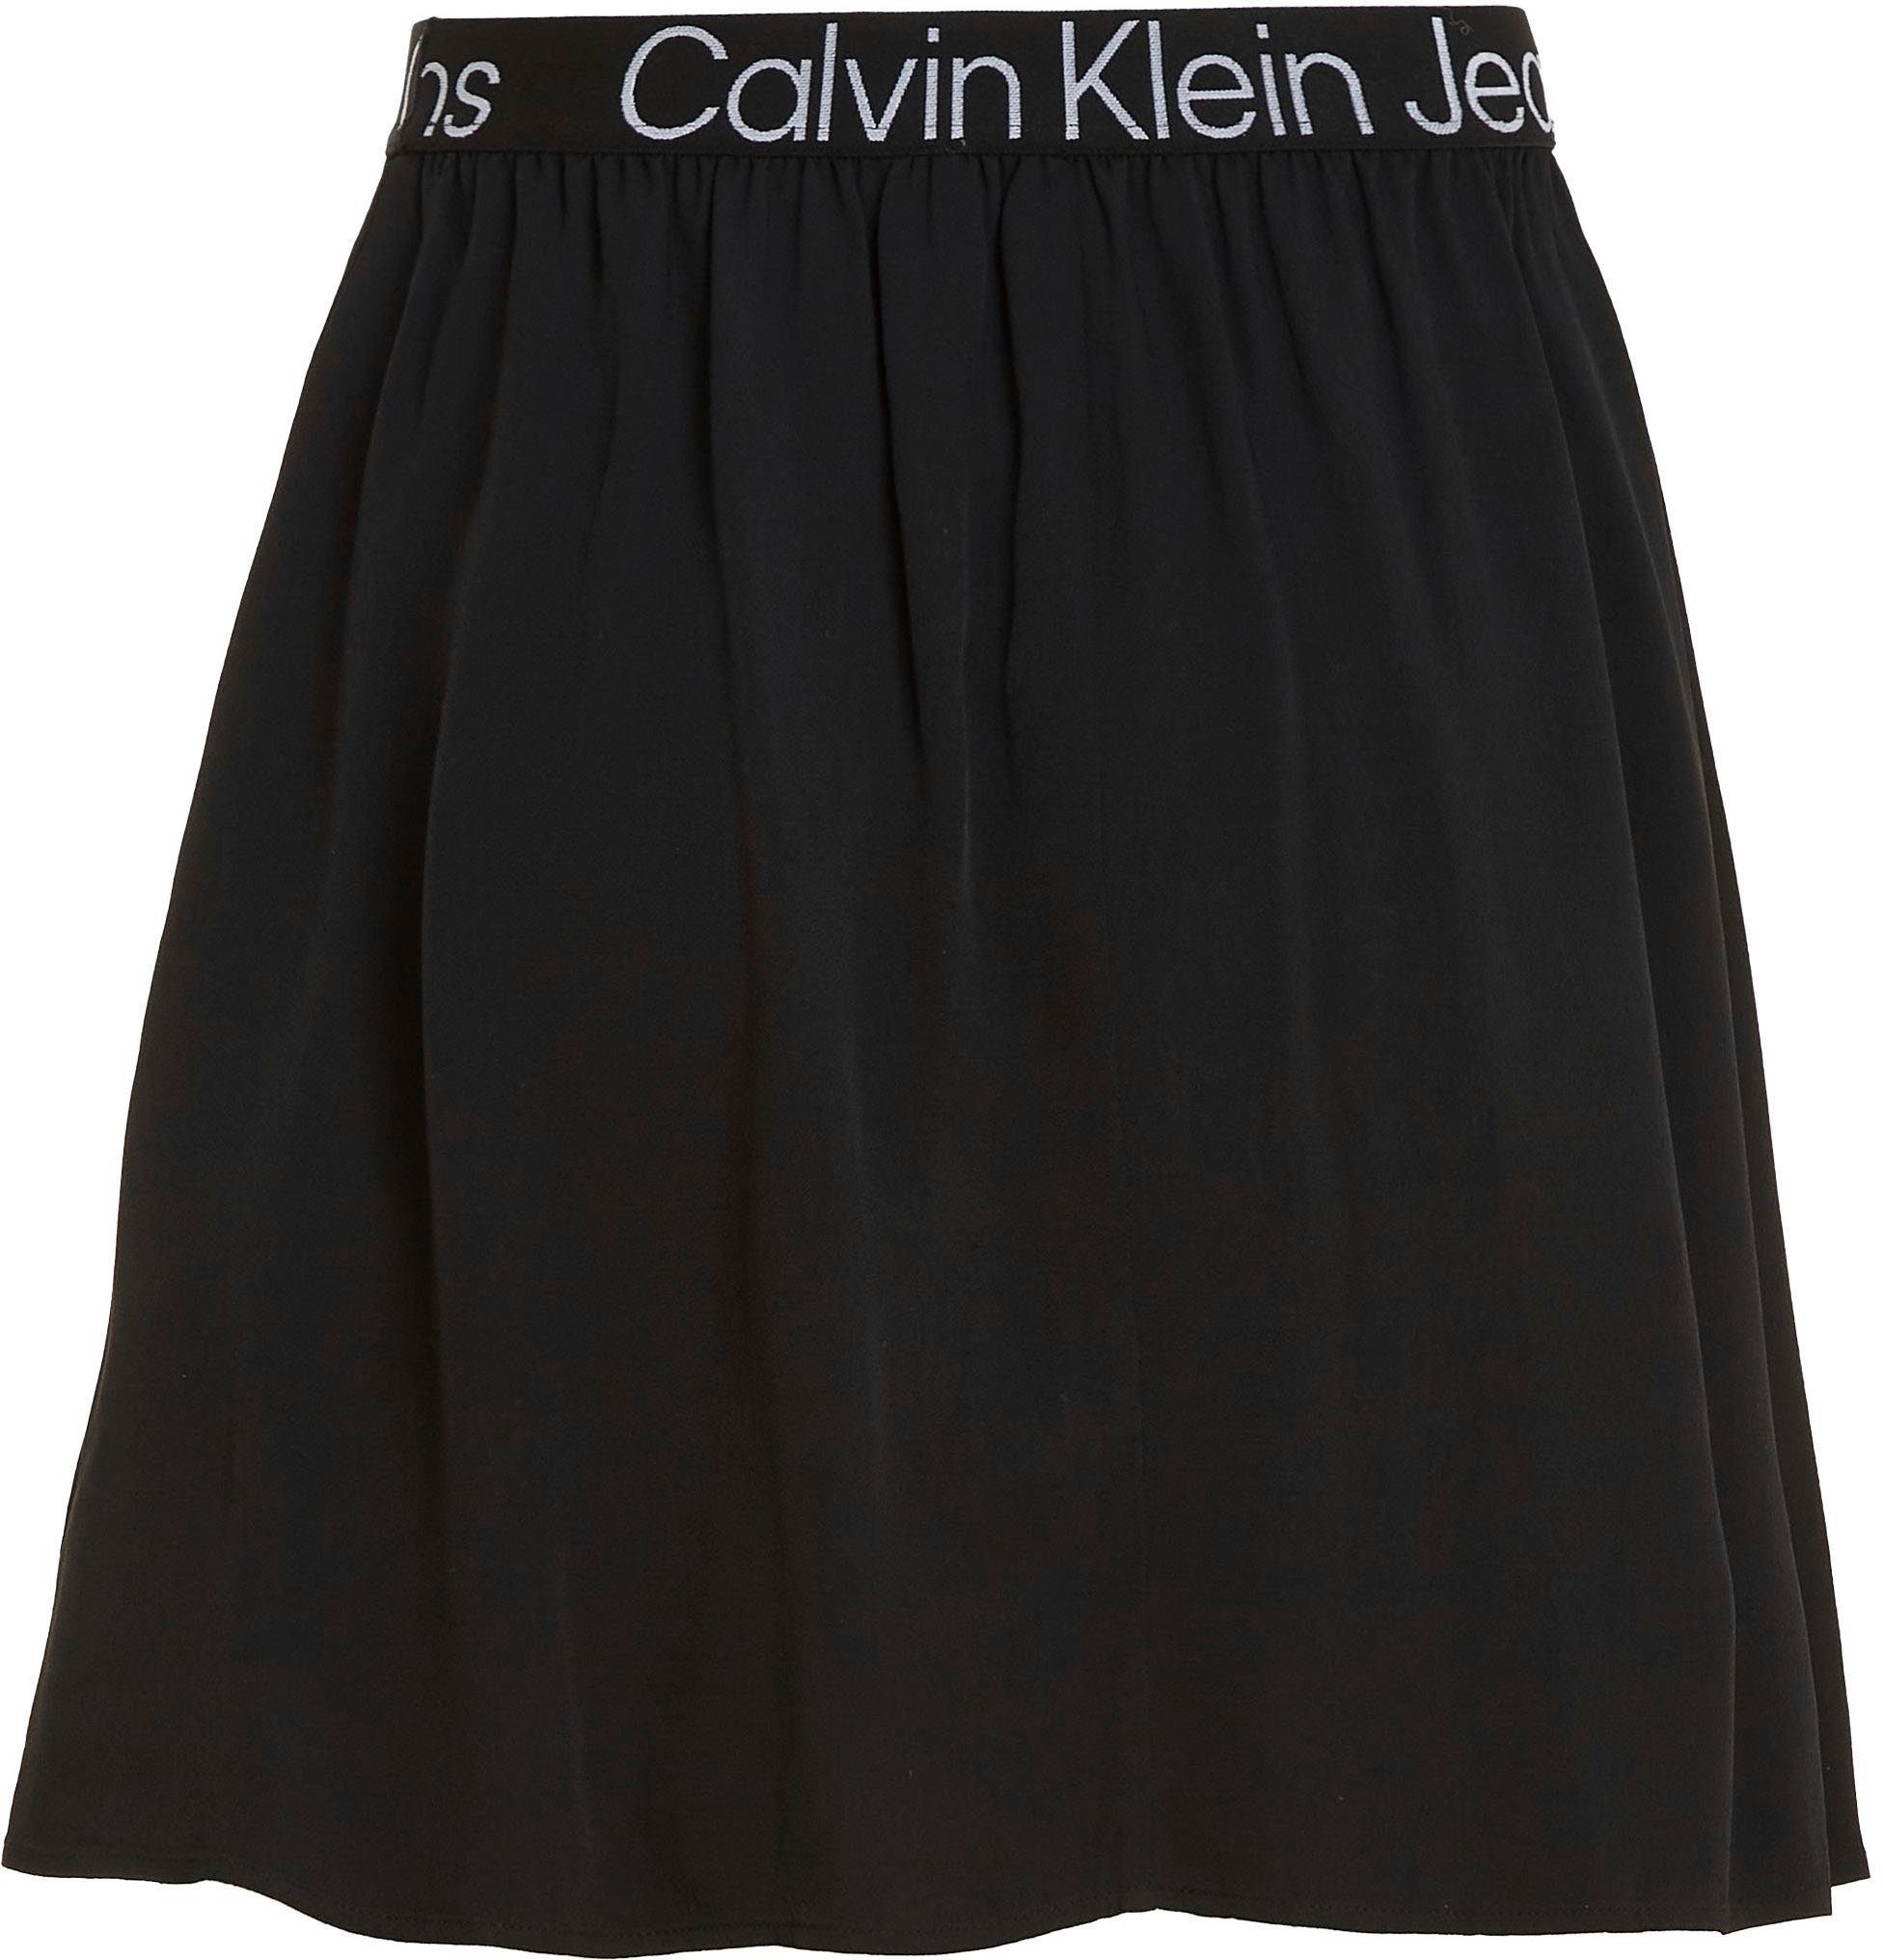 Minirock Calvin Klein schwarz Jeans-Bund Klein mit elastischem Jeans Calvin